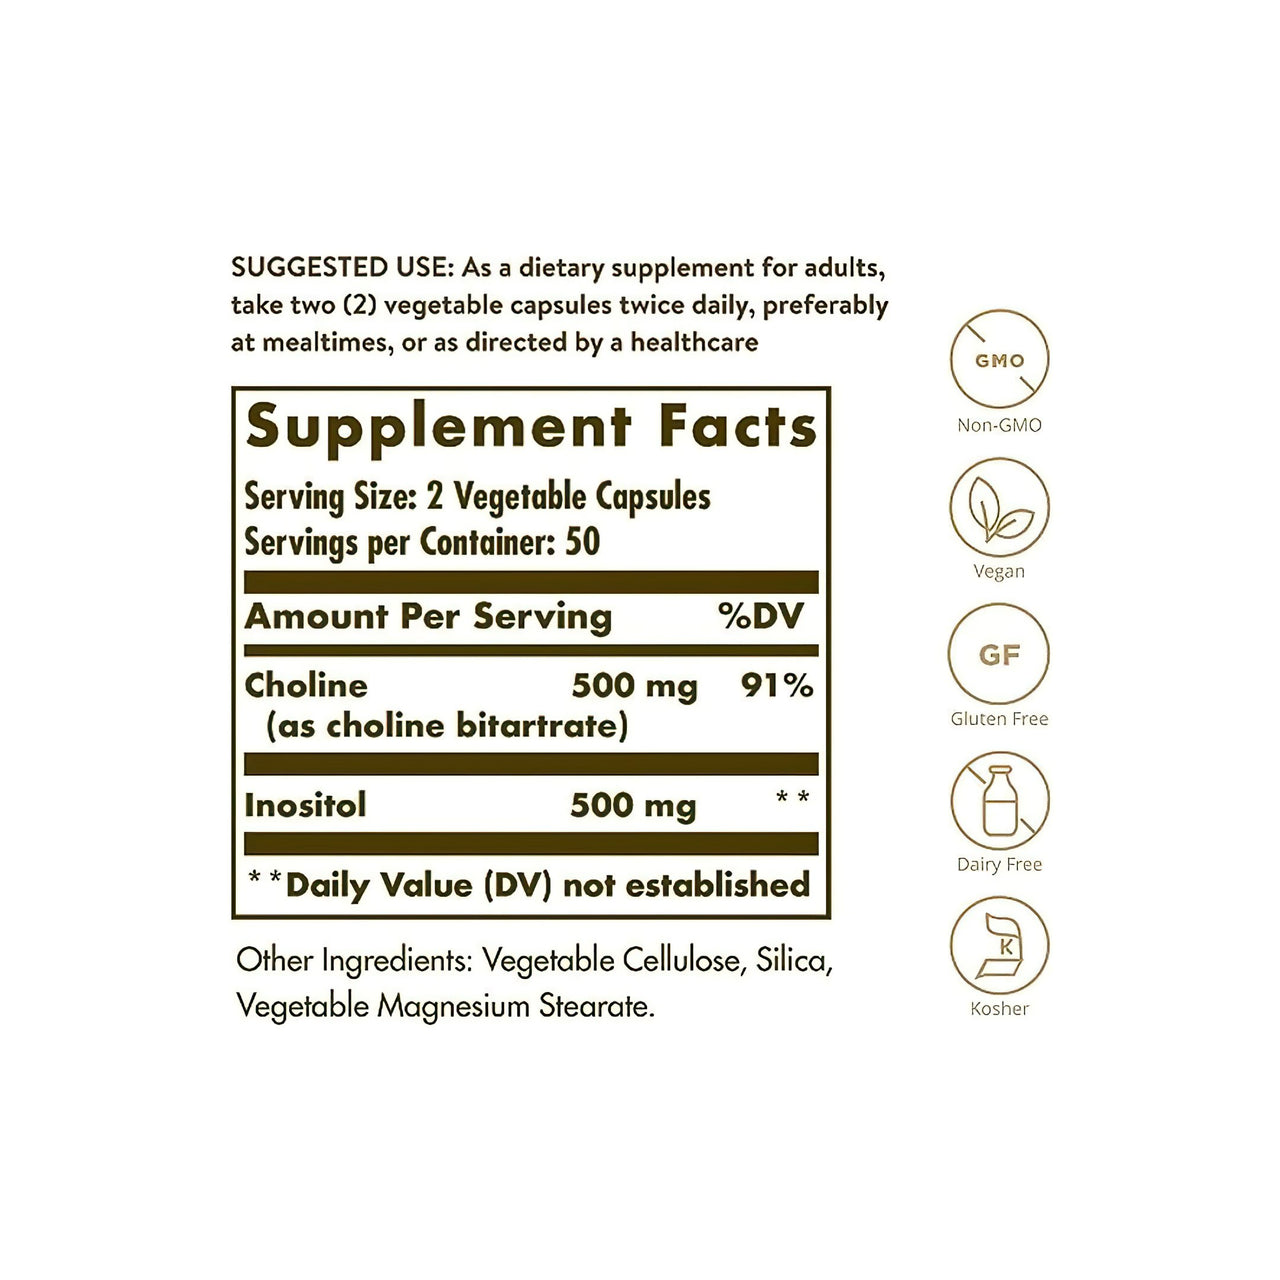 Etiqueta con los ingredientes del suplemento Solgar Colina 500 mg Inositol 500 mg 100 Cápsulas vegetales.